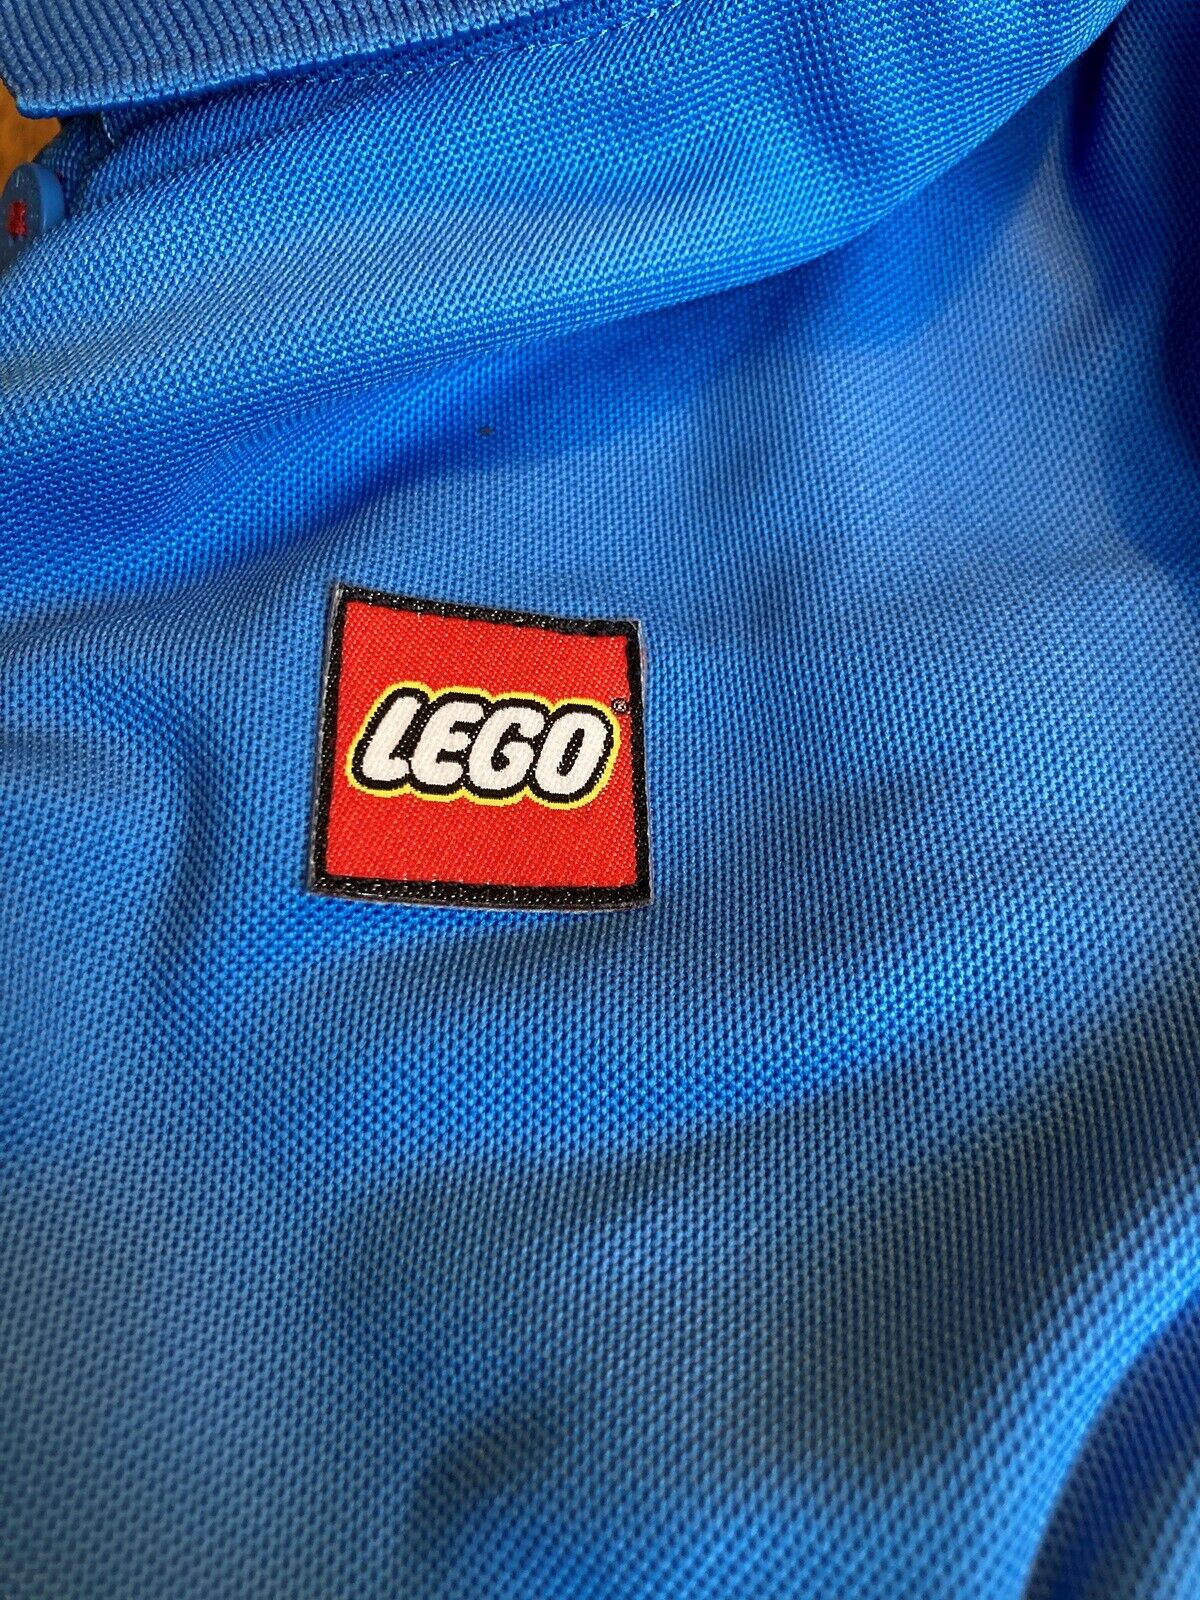 Lego andet, Medarbejder t-shirt